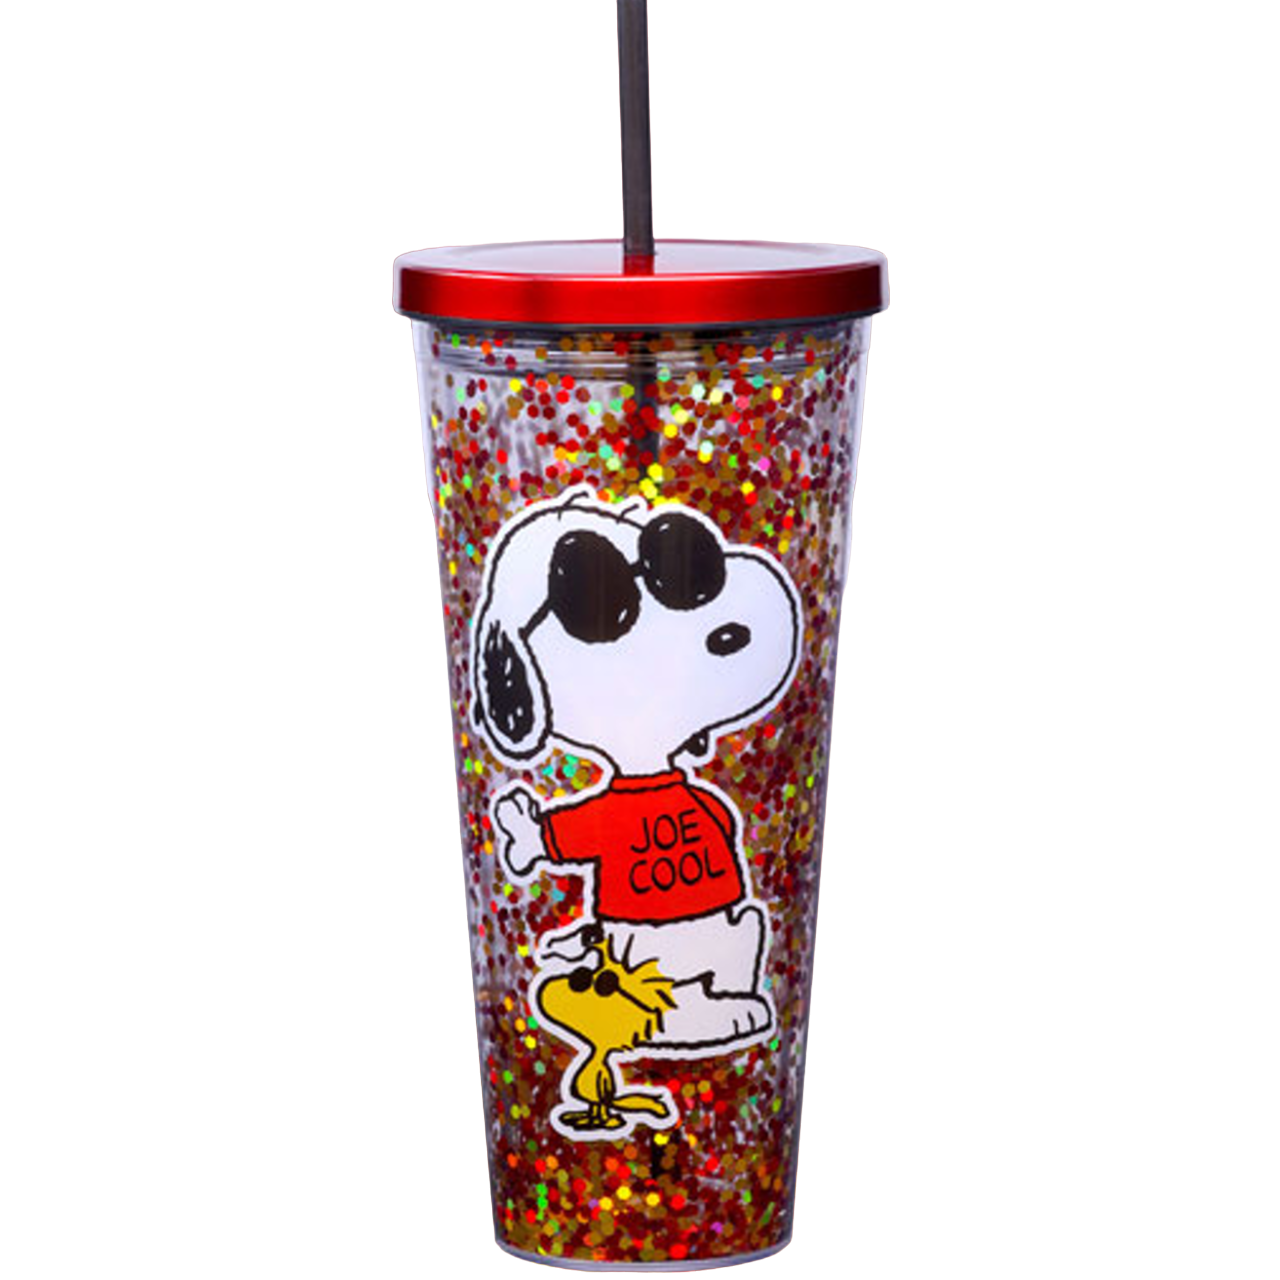 Peanuts Snoopy Joe Cool Glitter Travel Mug & Straw - 32 oz.